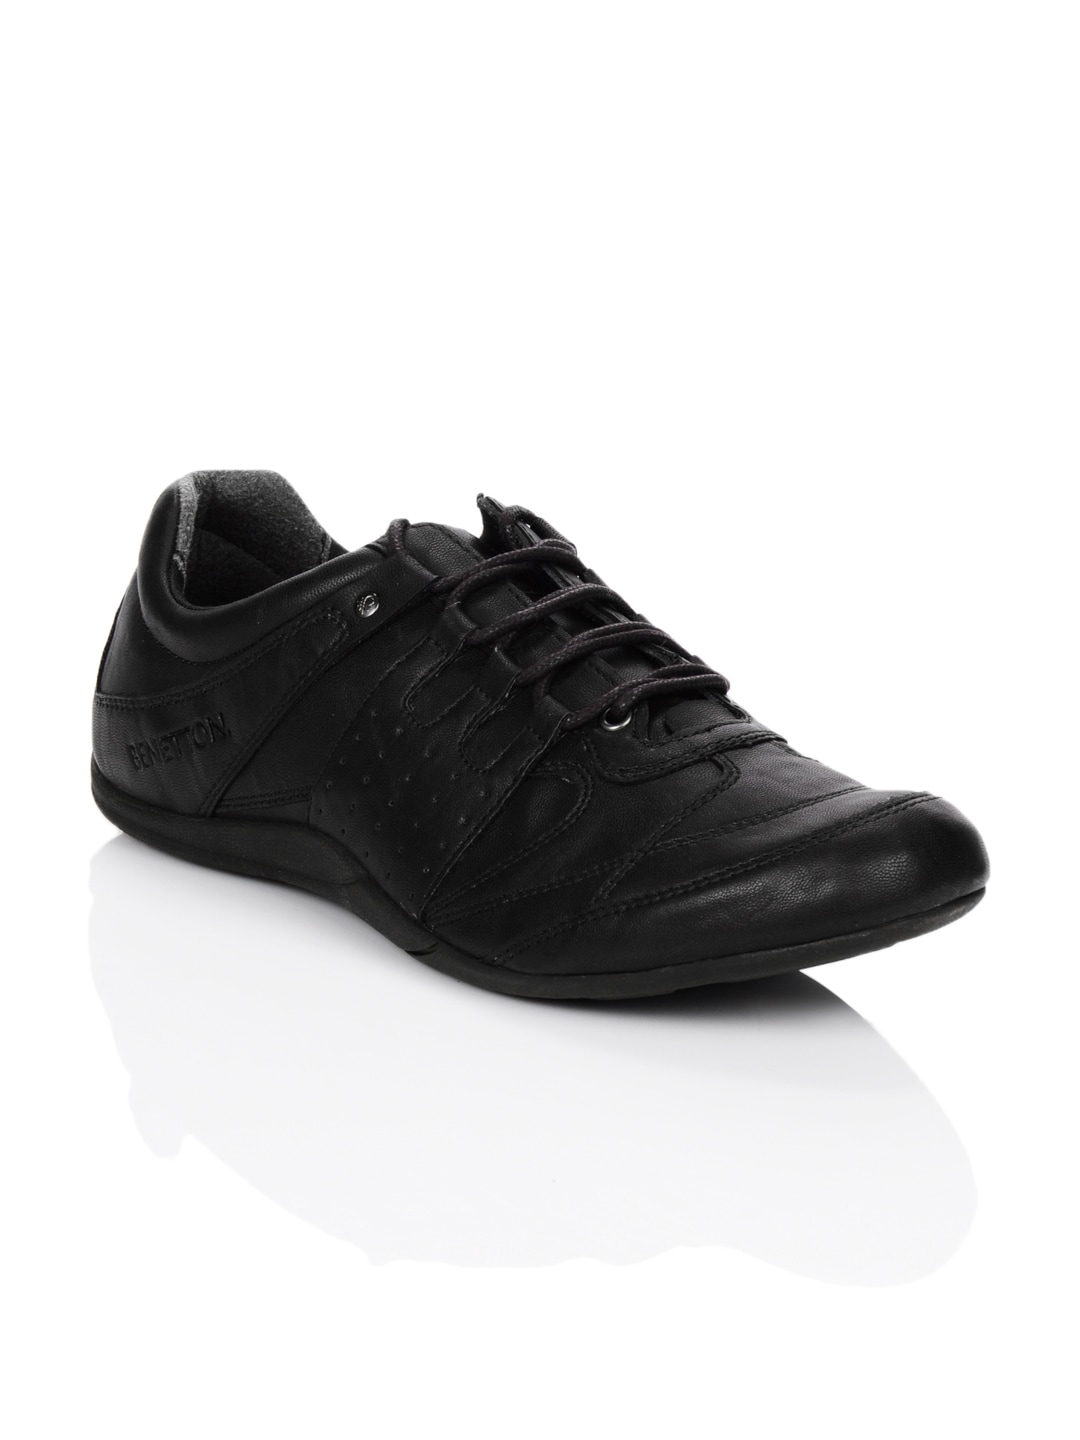 United Colors of Benetton Men Black Shoes